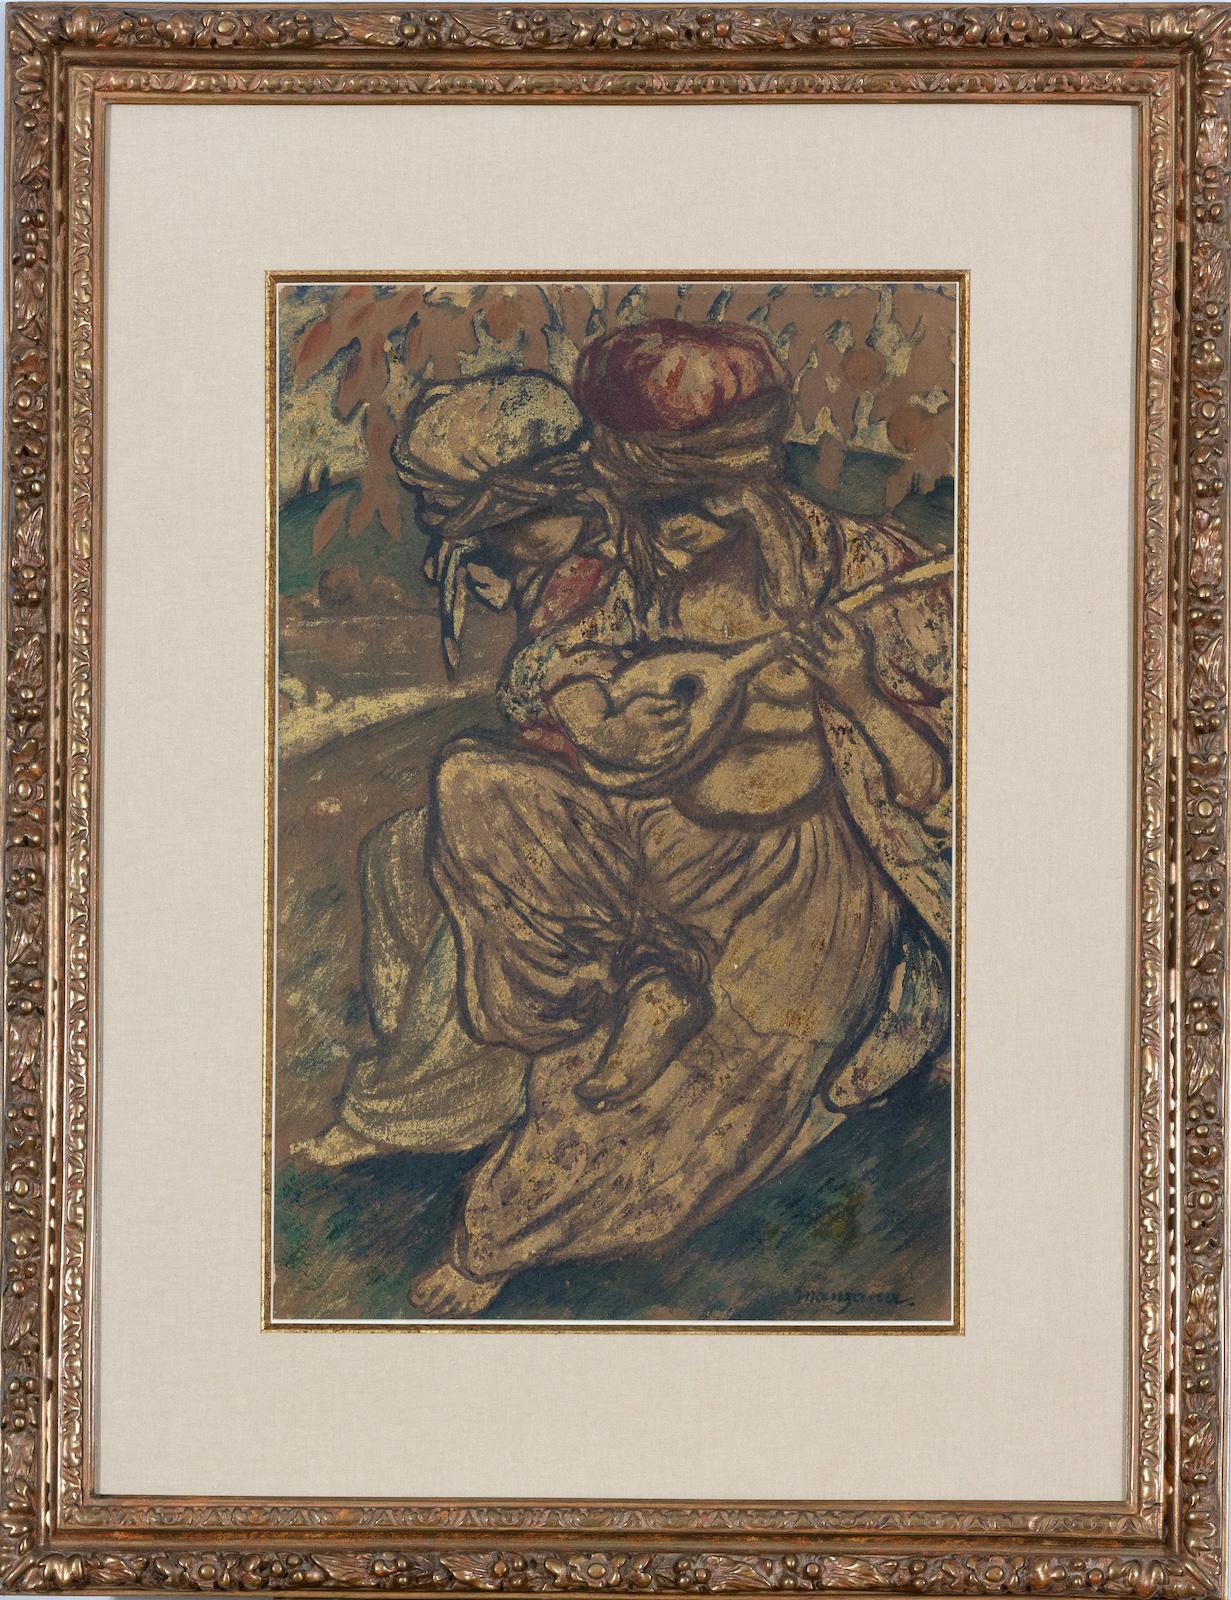 Femme à la mandoline von Georges Manzana Pissarro (1871-1961)
Gemischte Medien auf Papier
48 x 31 cm (18 ⁷/₈ x 12 ¹/₄ Zoll)
Signiert unten rechts, manzana.
Ausgeführt um 1910

Dieses Werk wird von einem Echtheitszertifikat von Lélia Pissarro